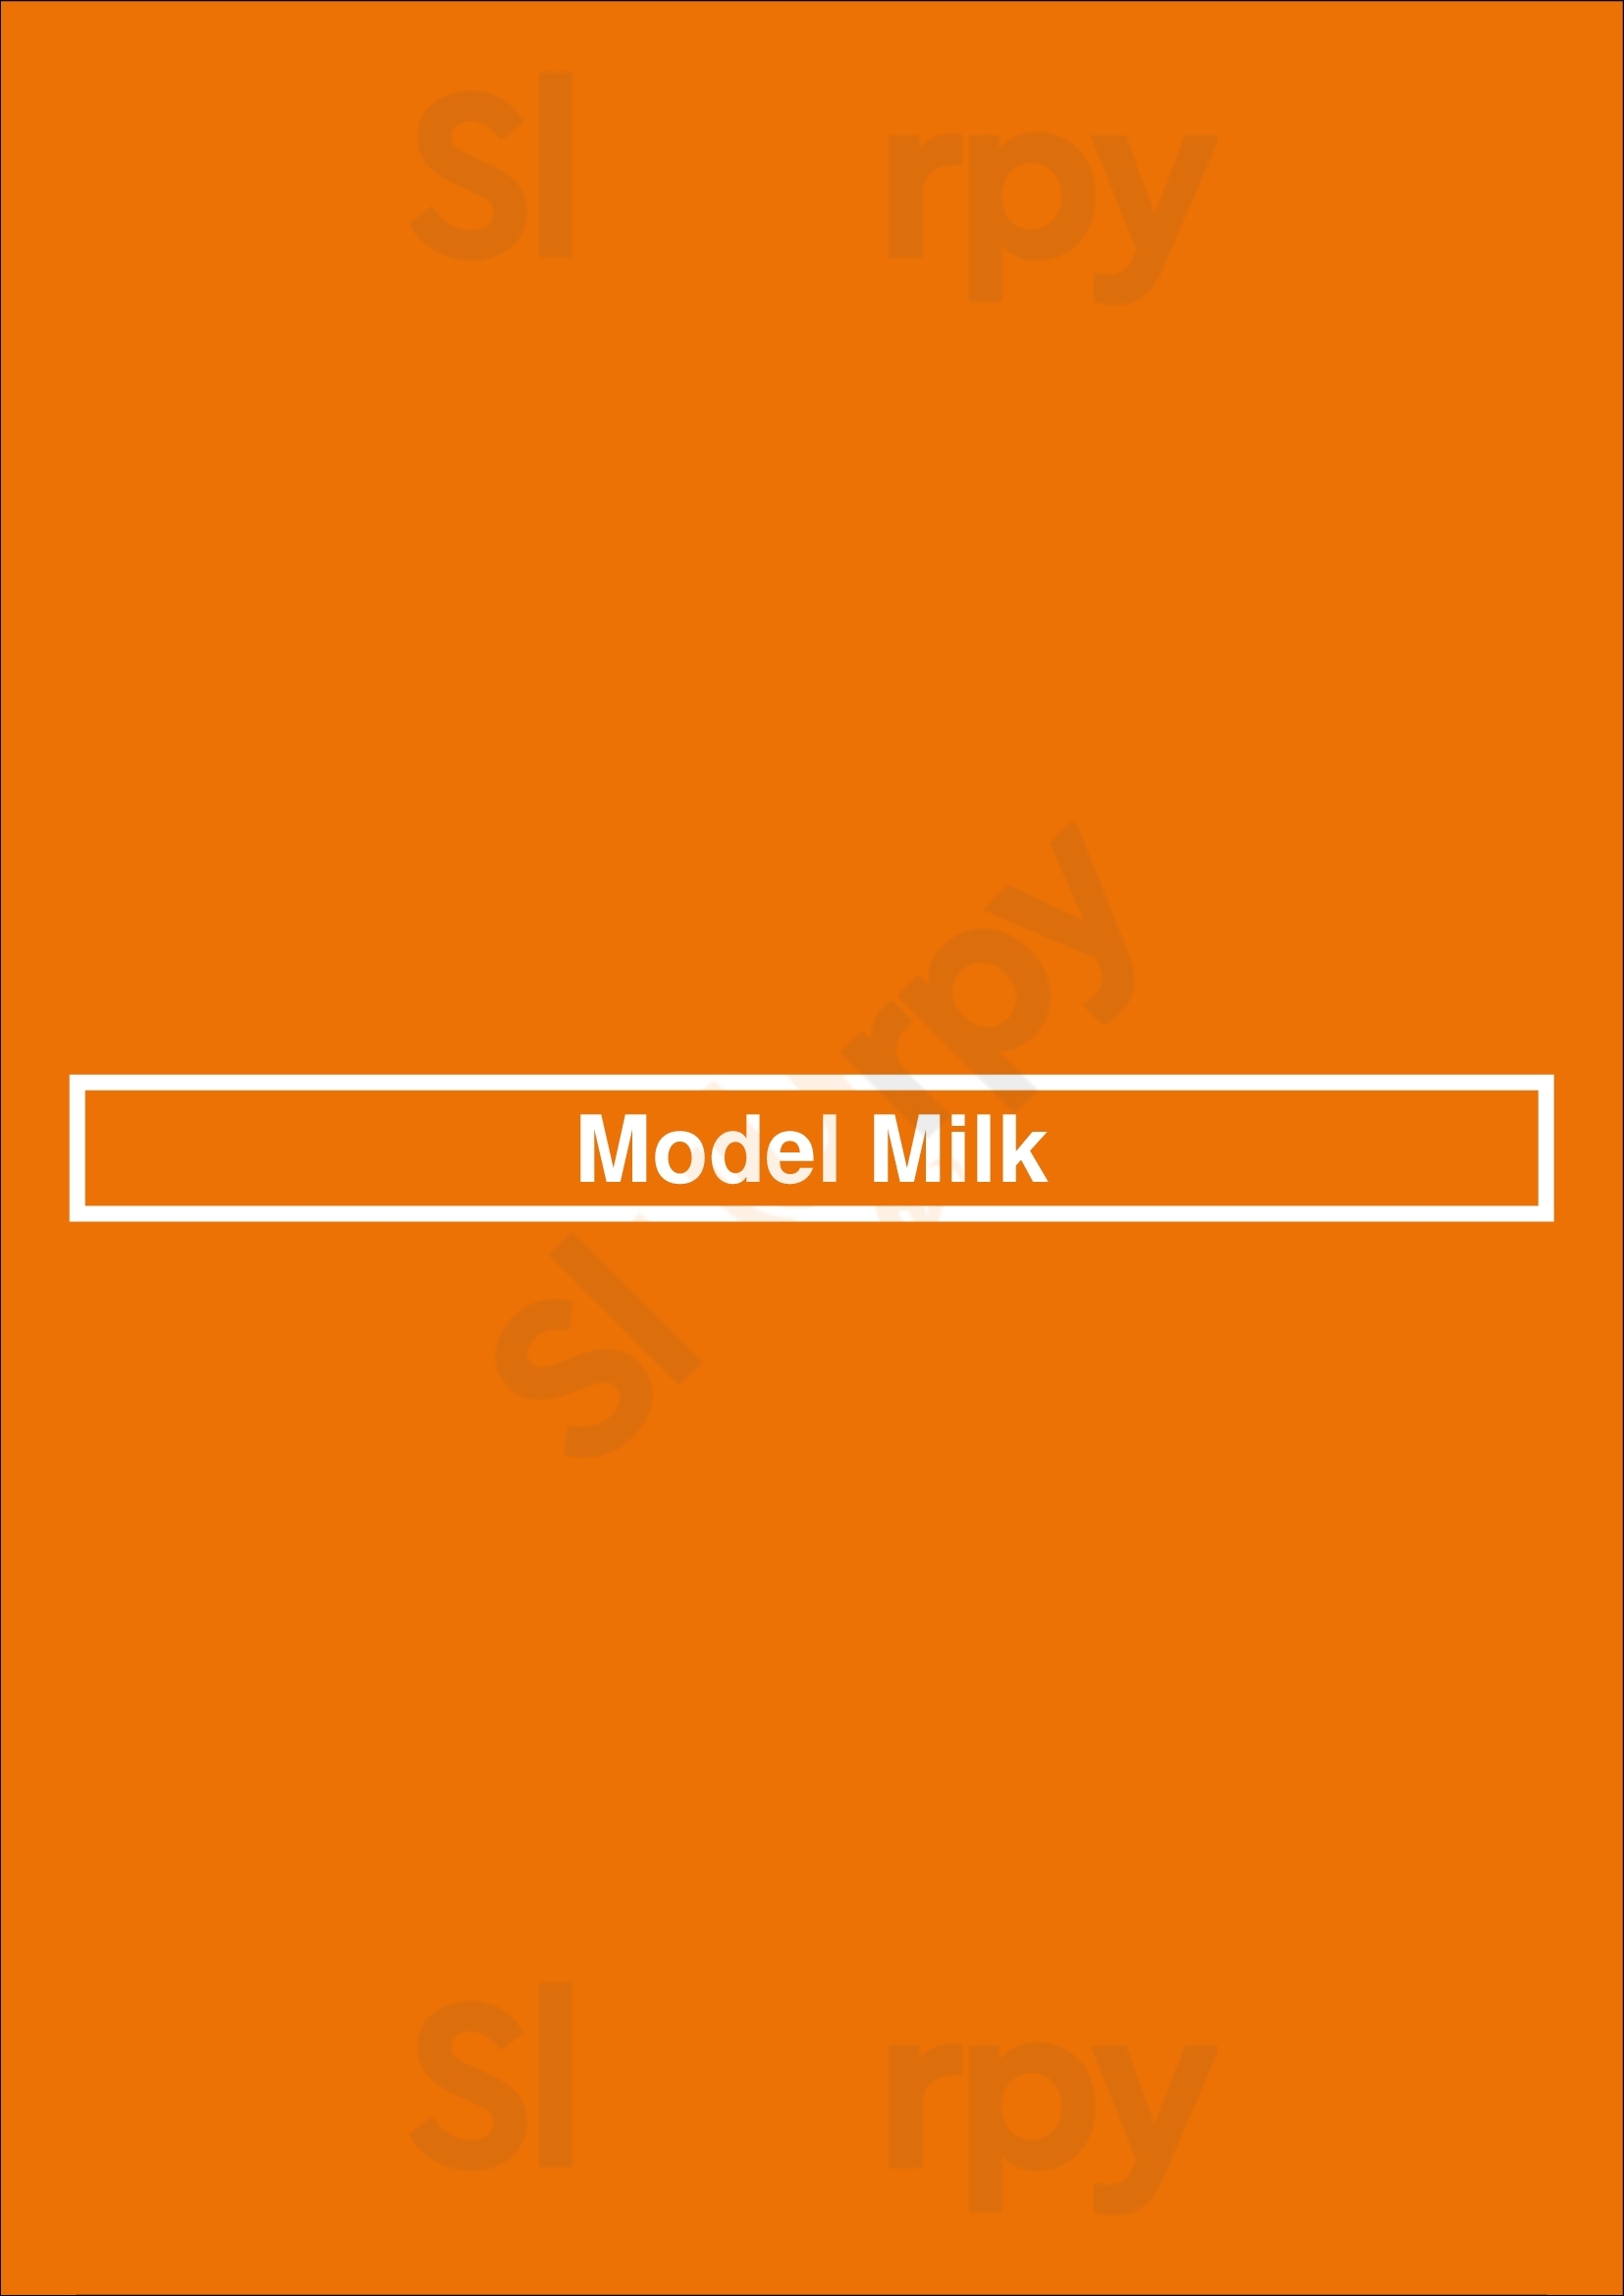 Model Milk Calgary Menu - 1